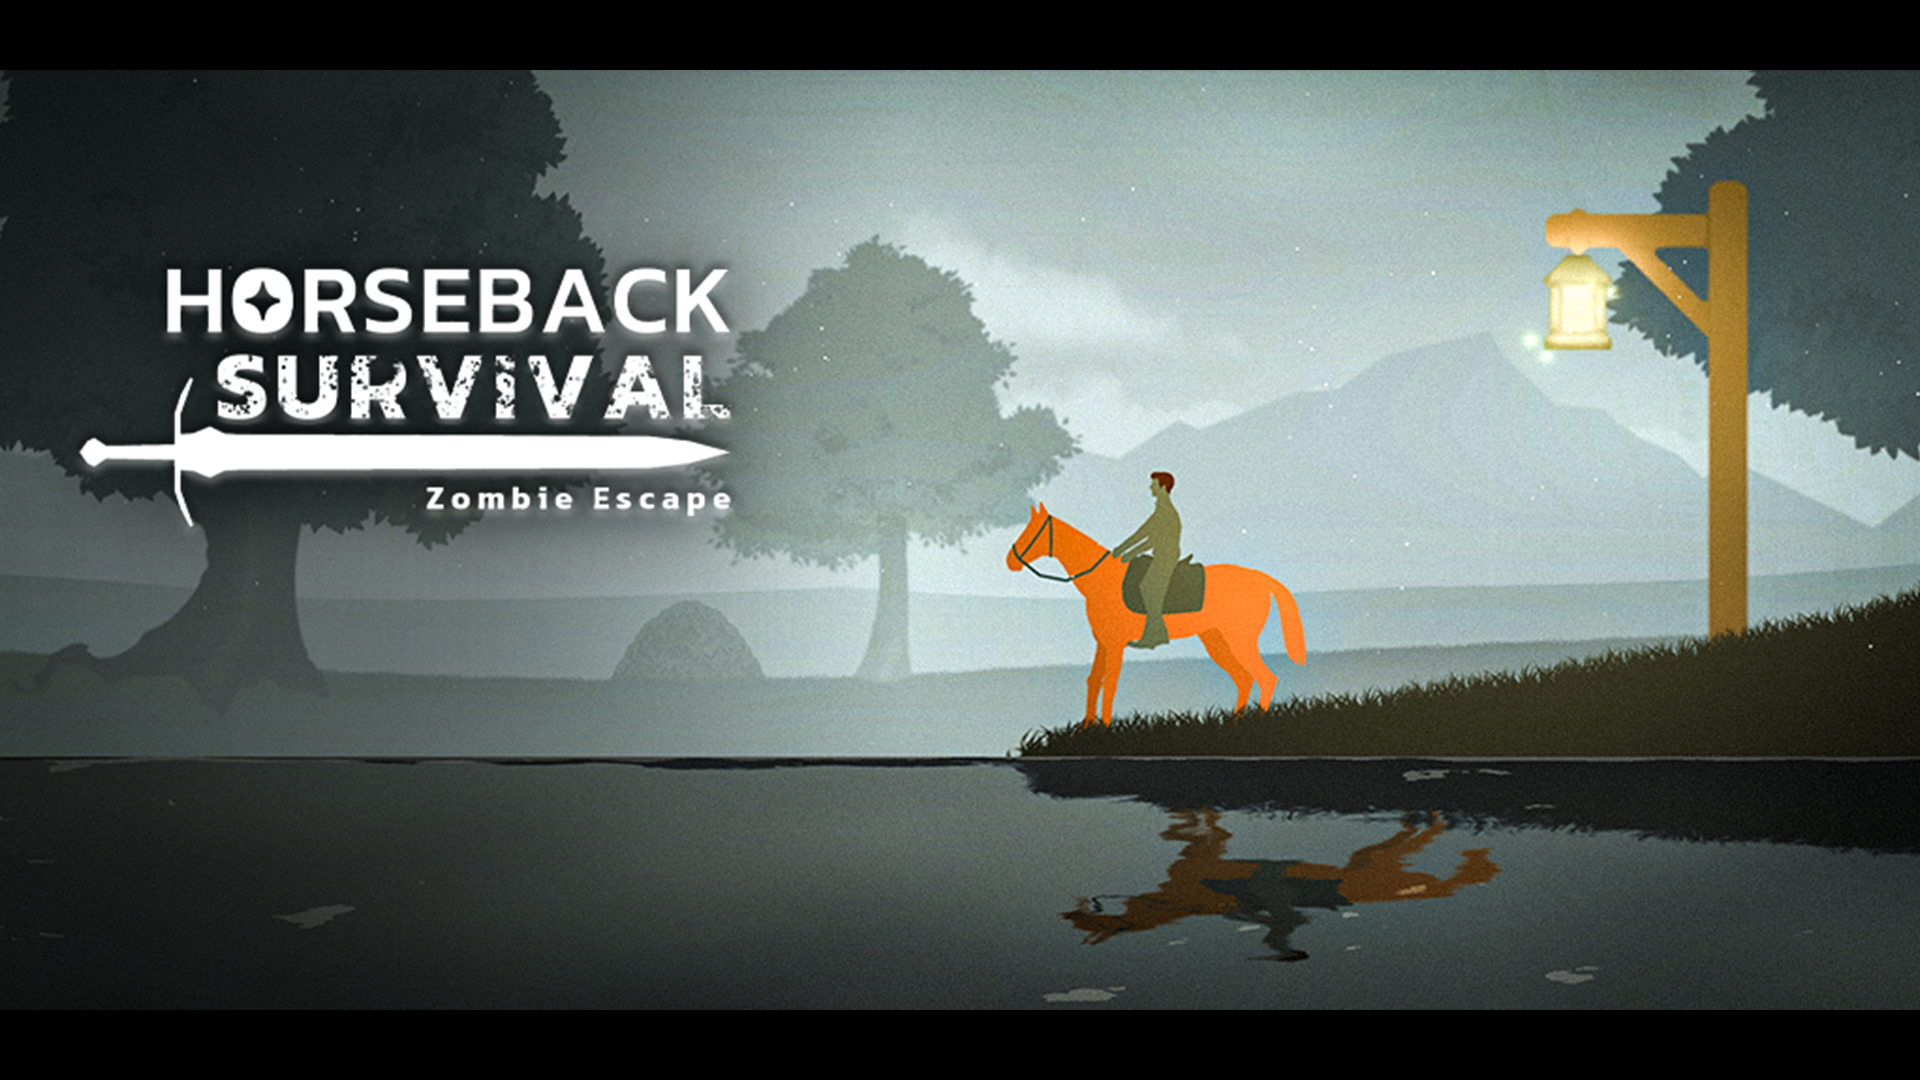 Horseback Survival Game Image